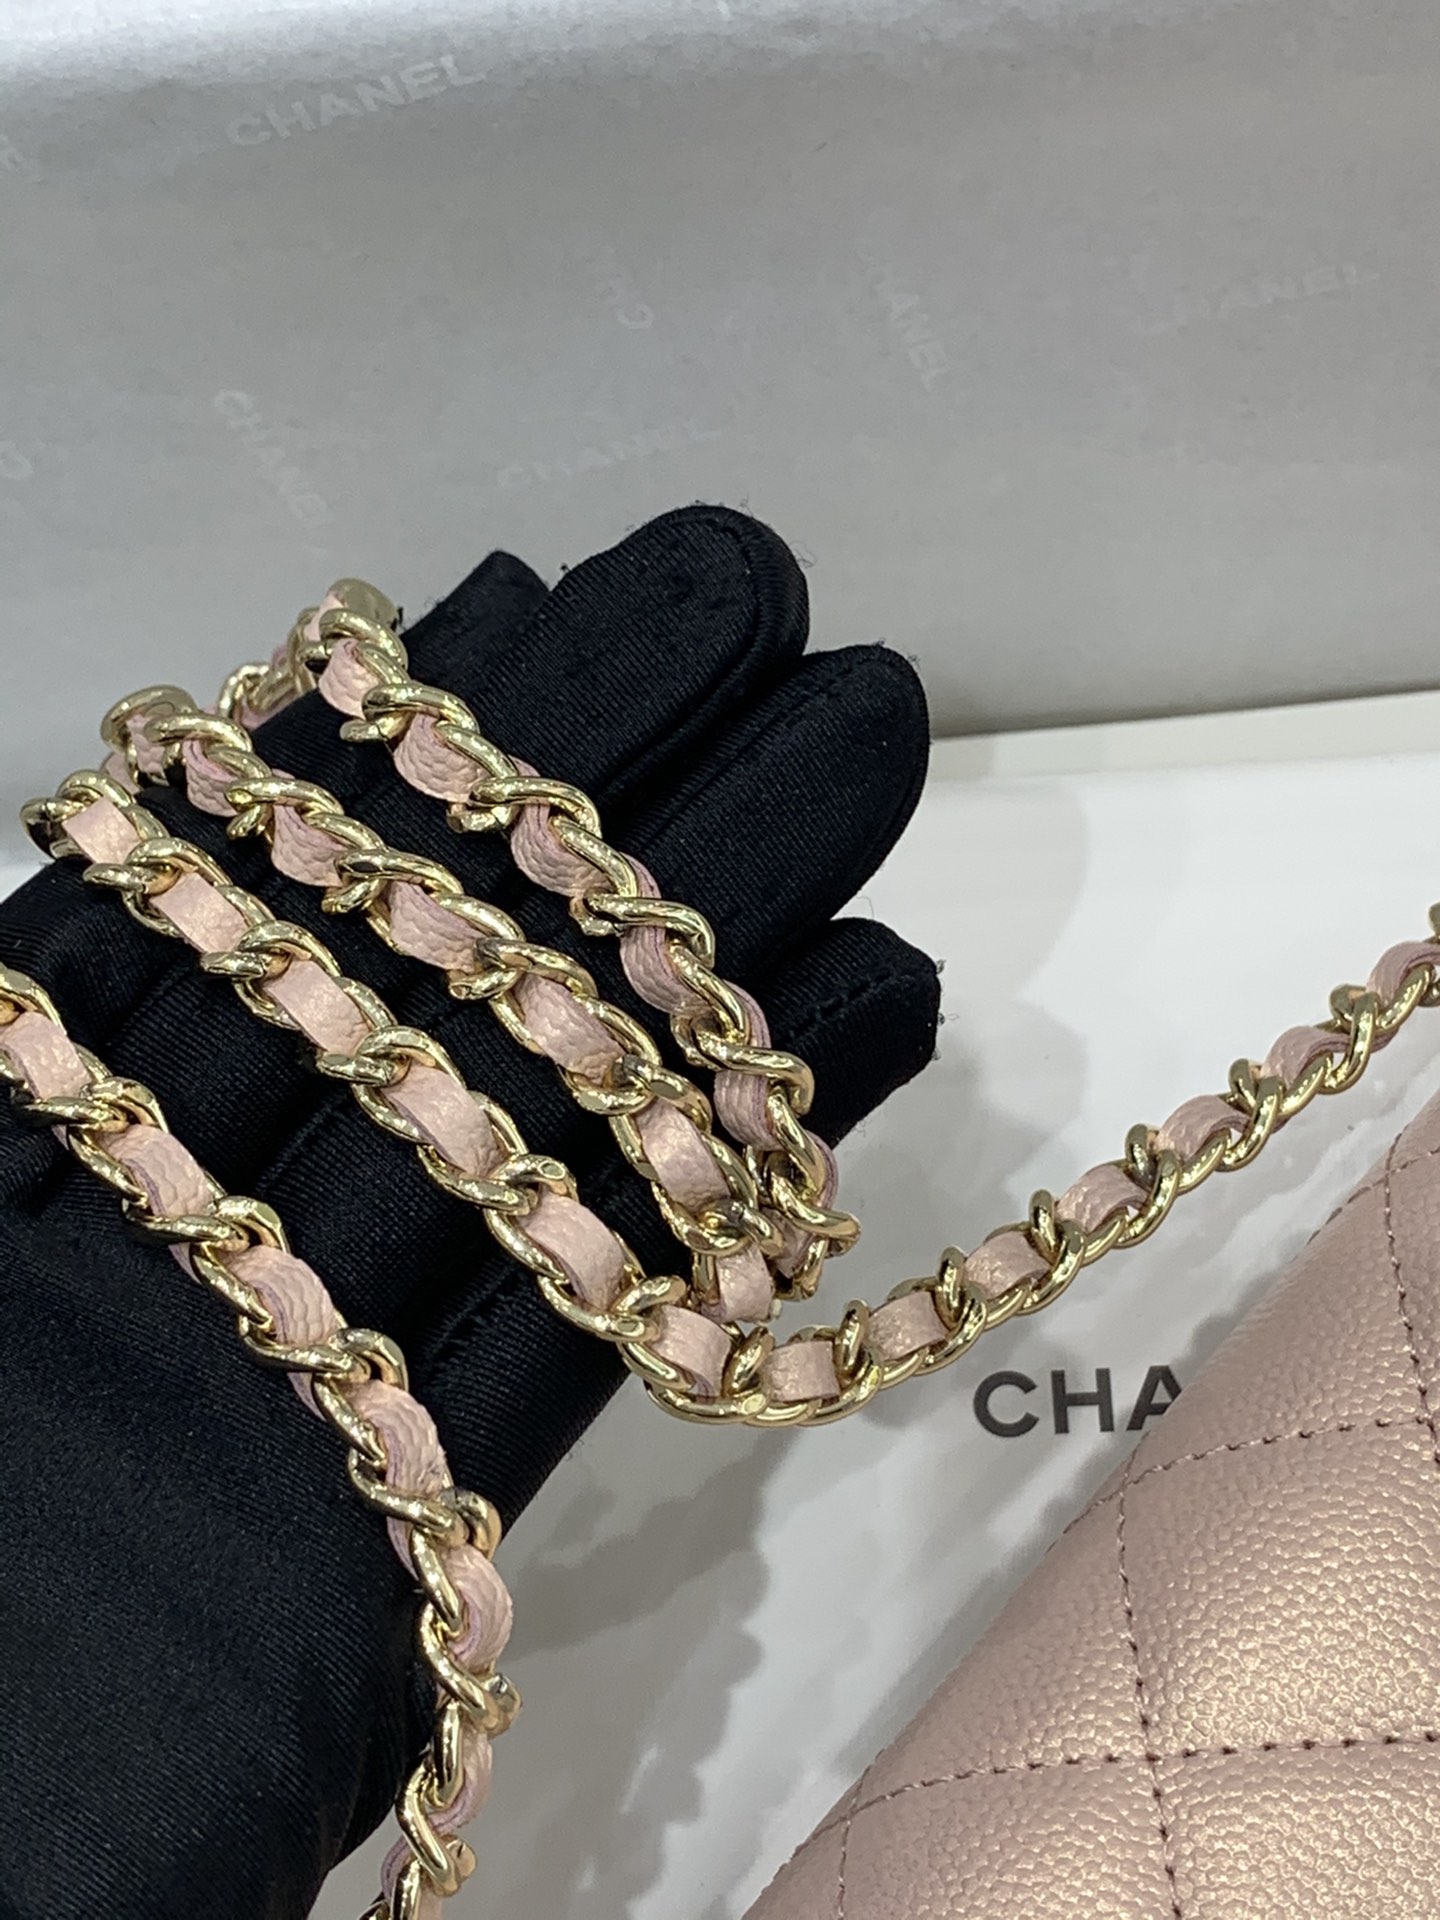 【按扣版】 Chanel Woc 新款变色woc 珠光皮 不同光线变换出炫彩 19.5-13-3.5cm